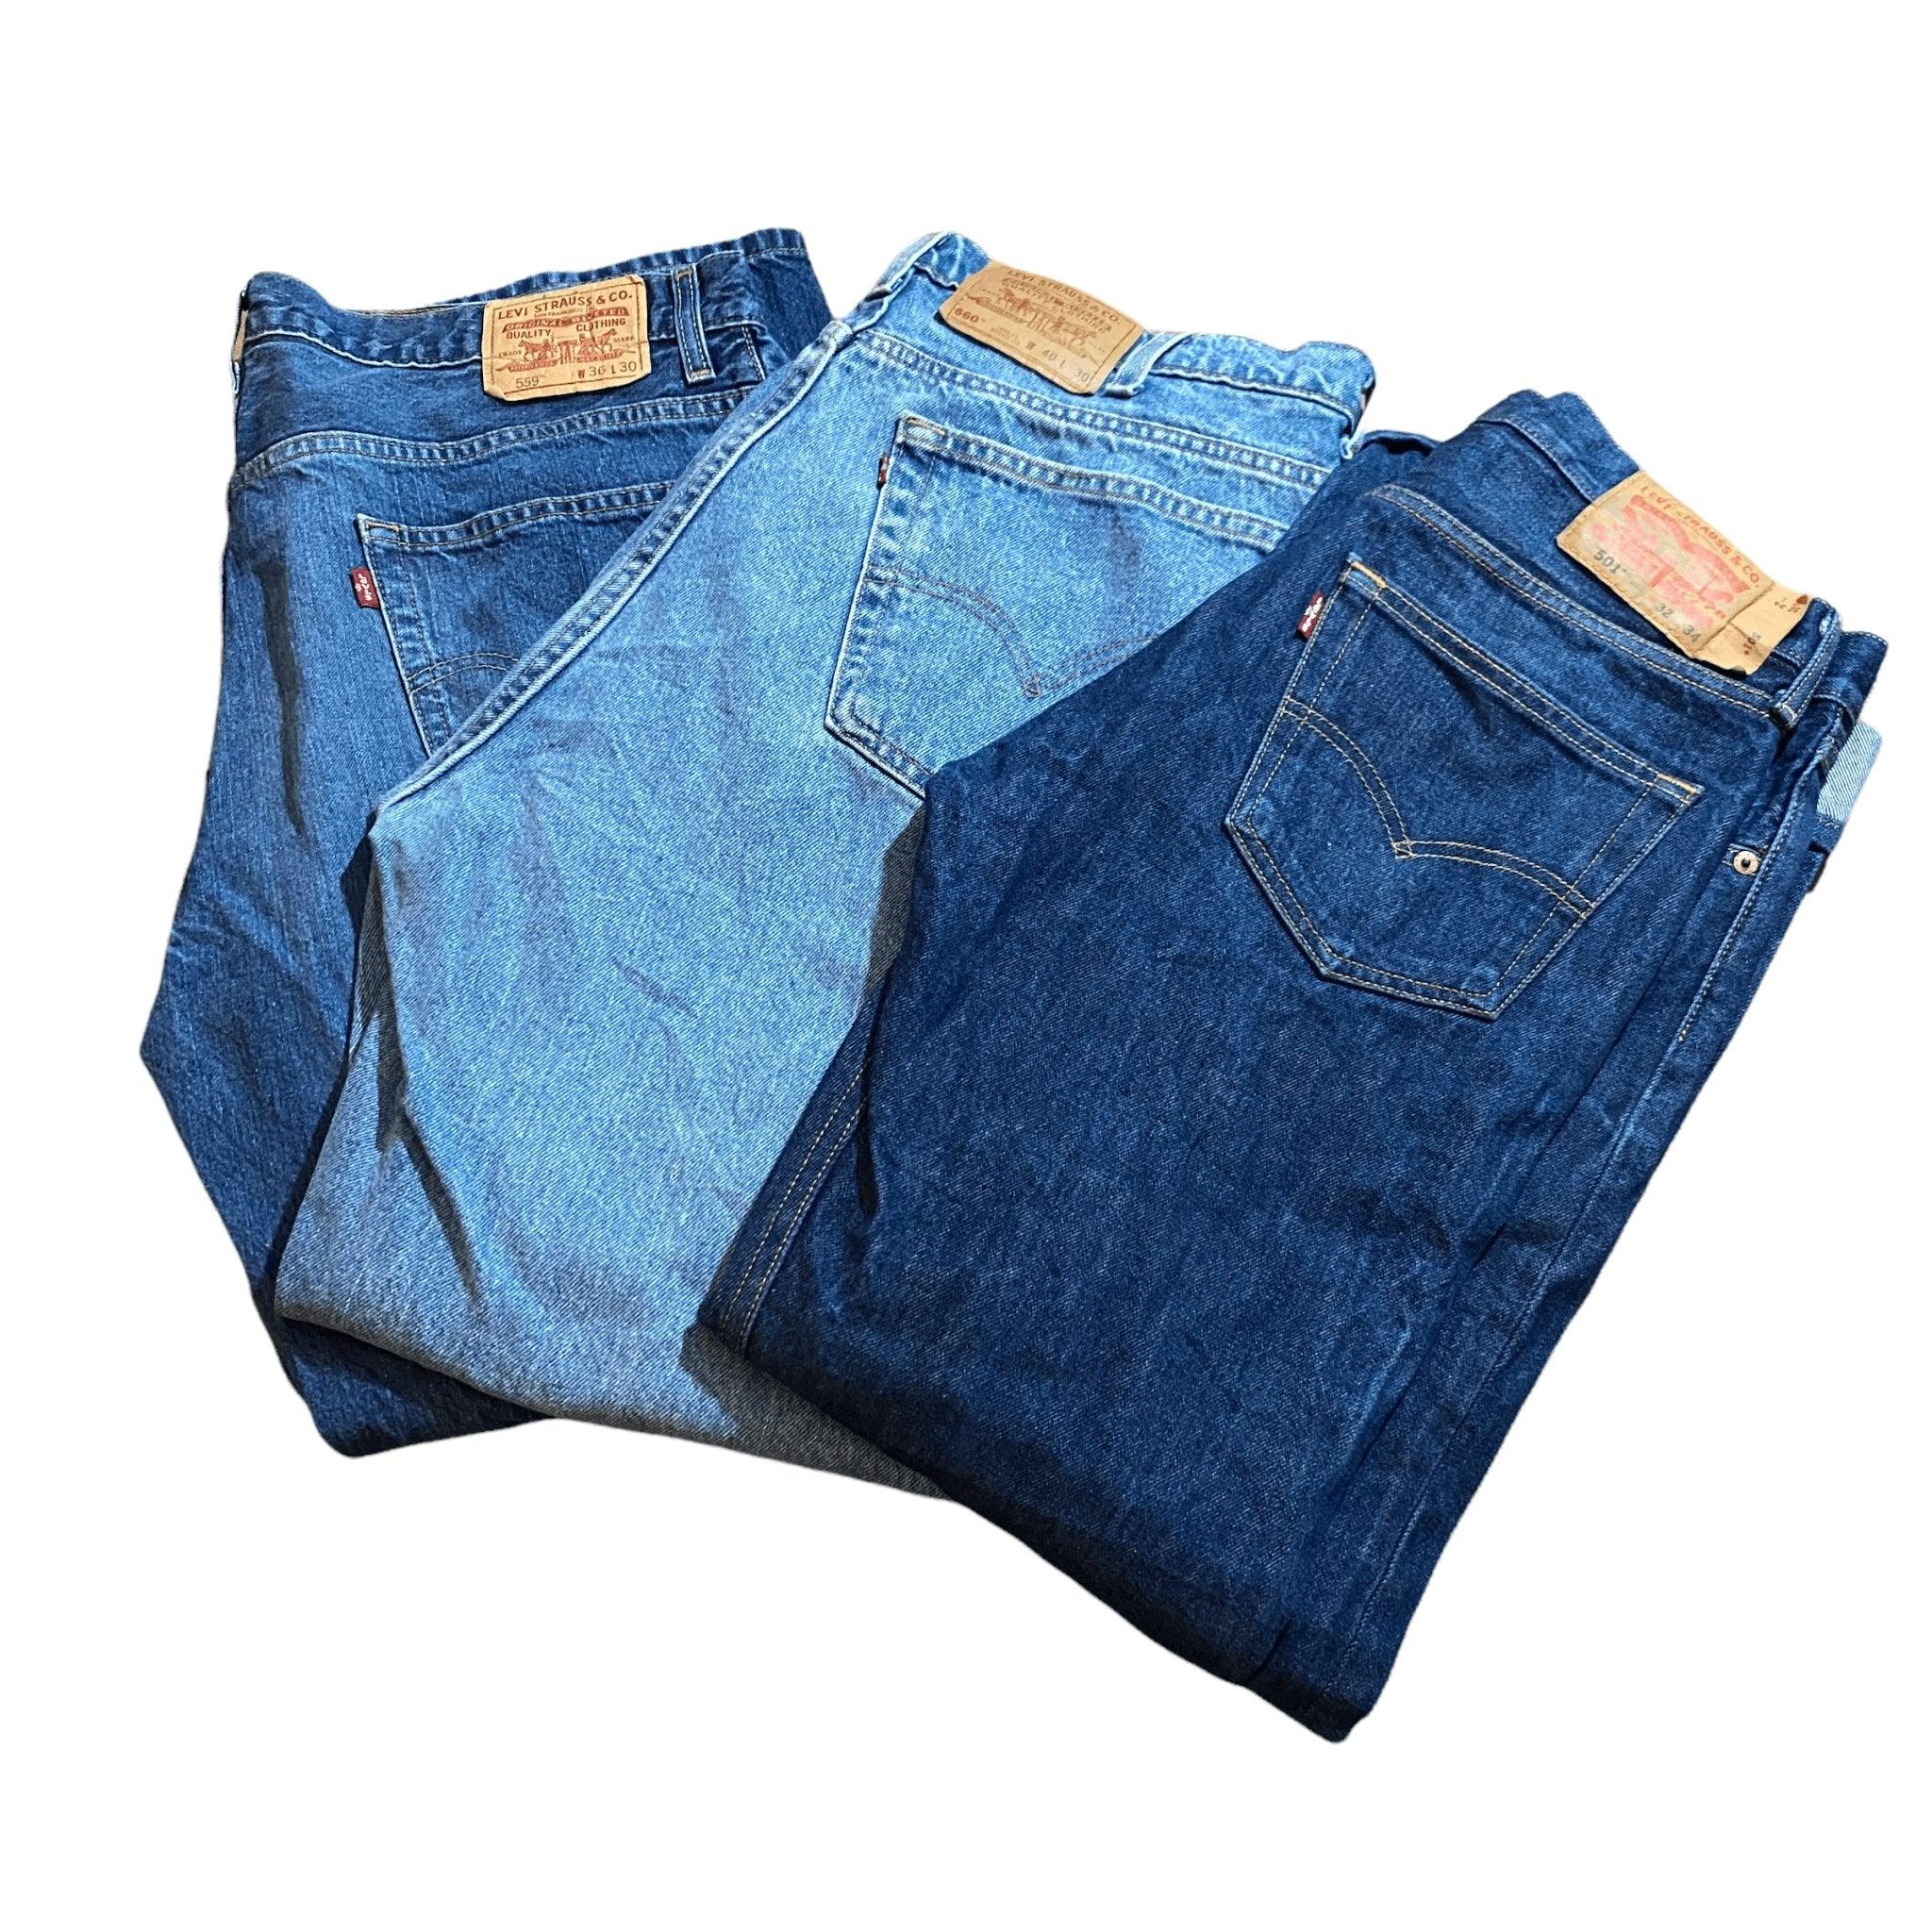 Wholesale Levis Jeans - Visione Vintage